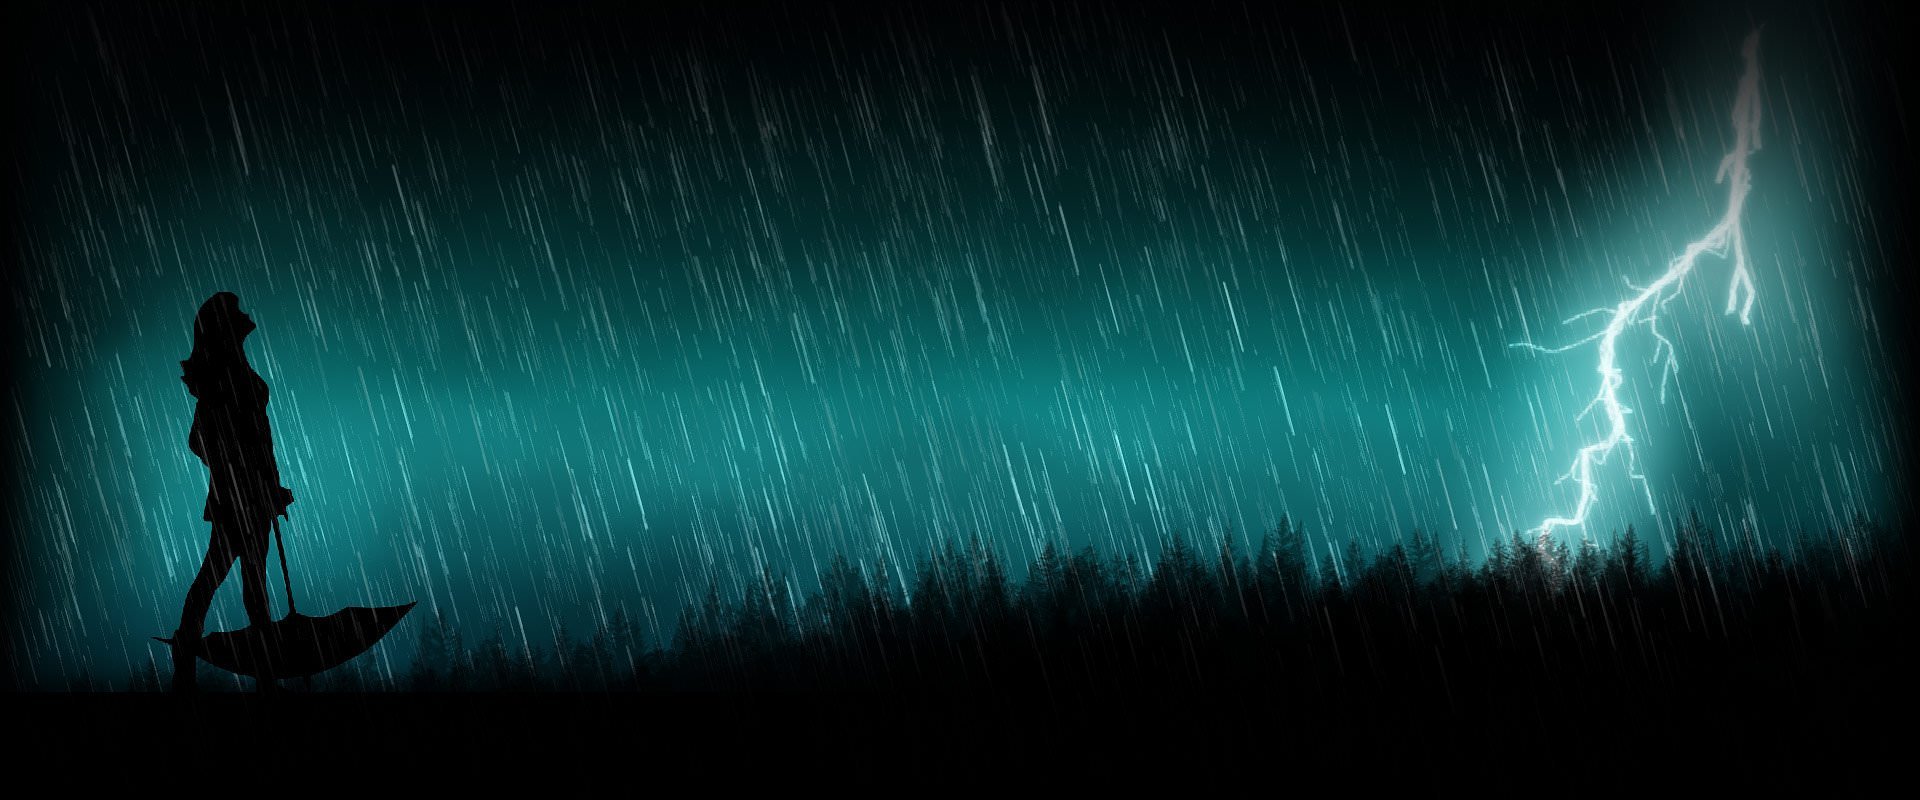 иллюстрация в стиме дождь фото 104